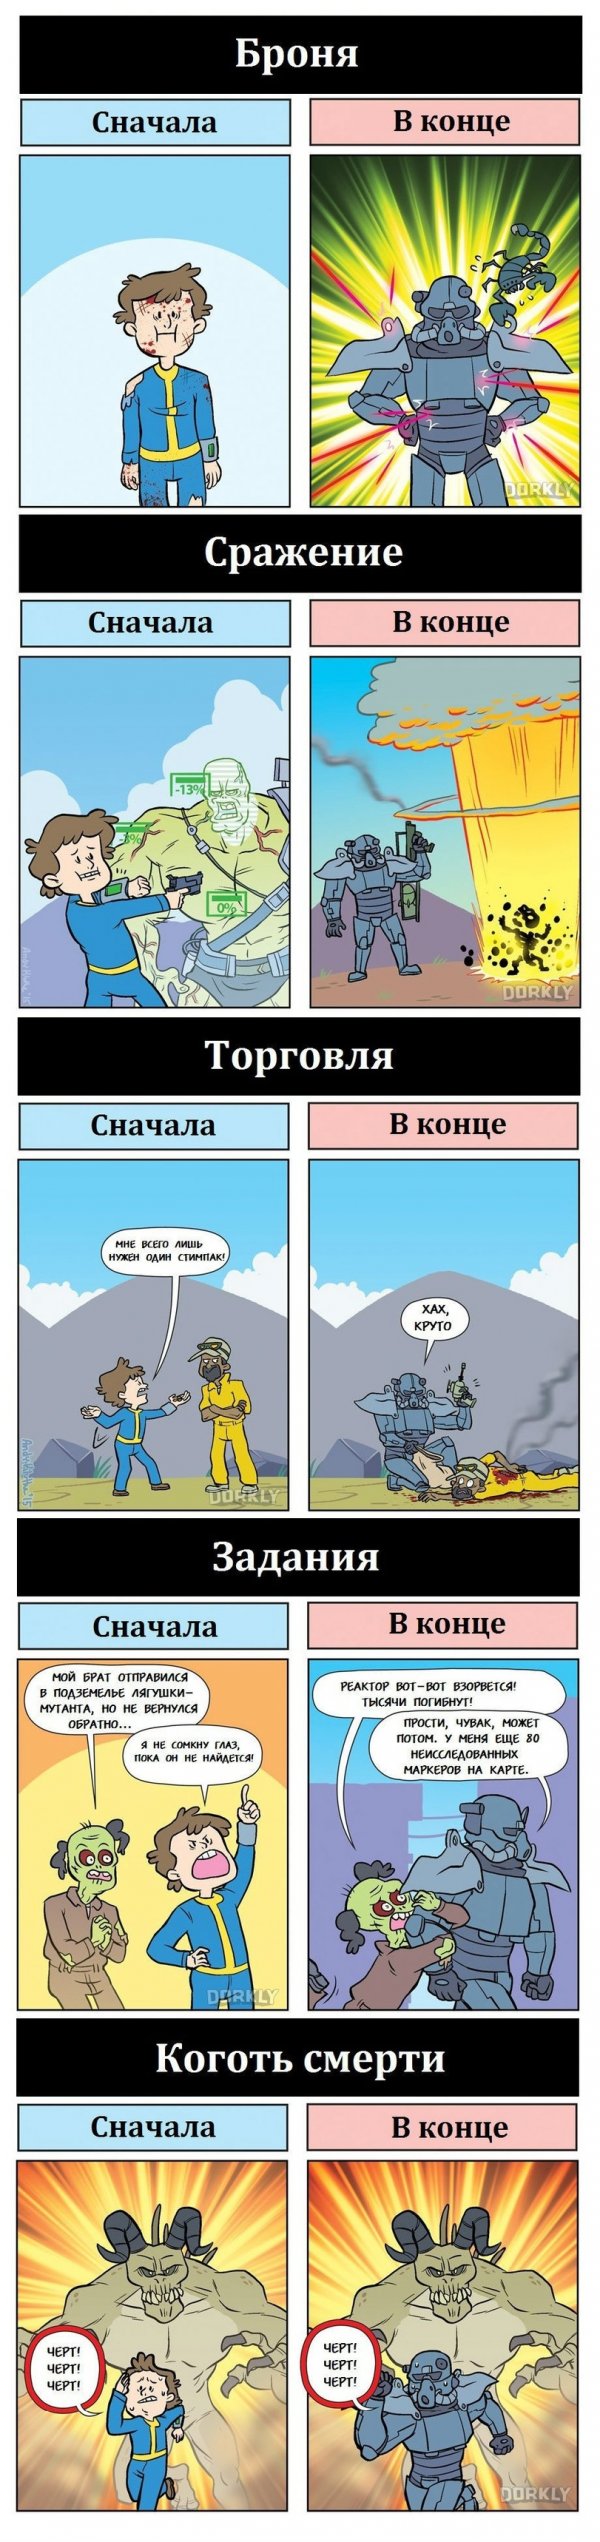 Fallout - начало vs. окончание